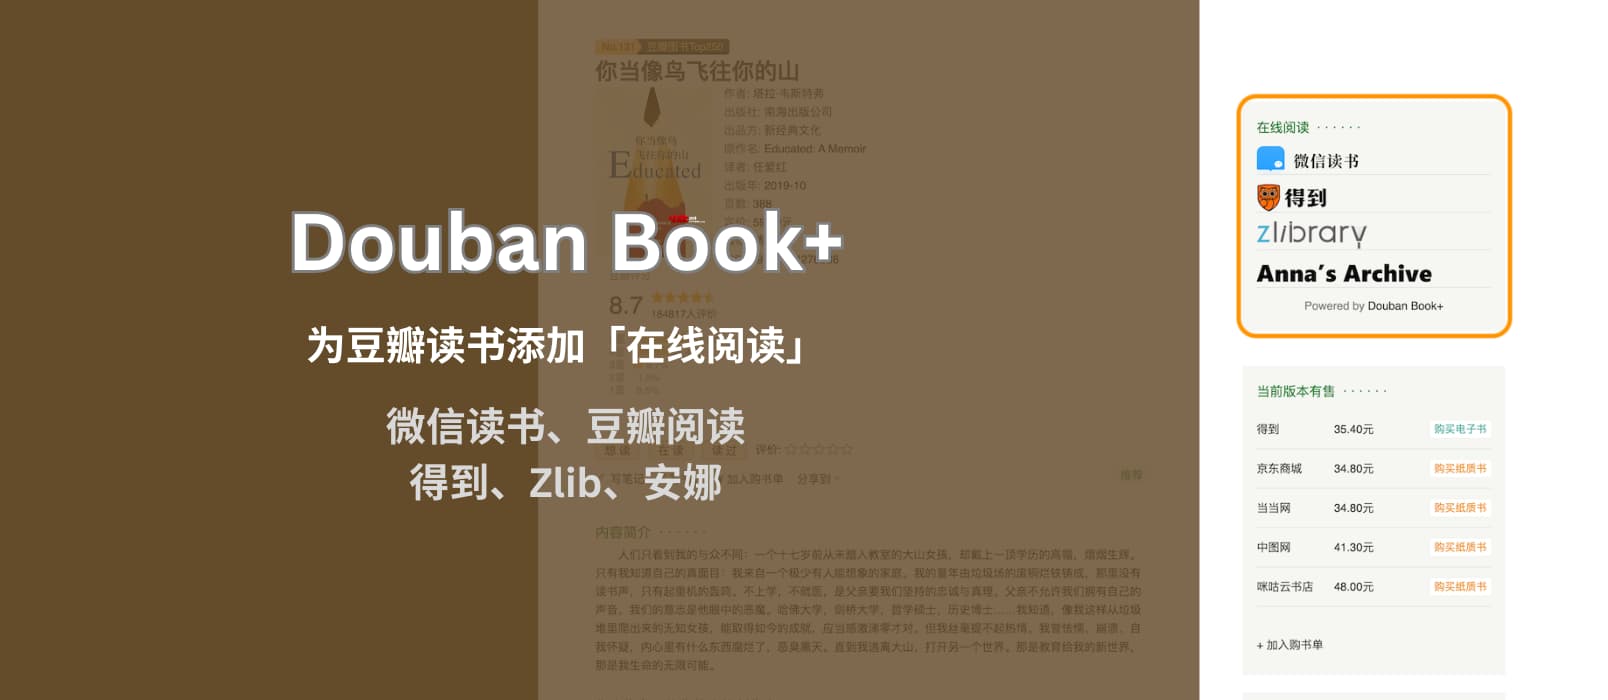 Douban Book+ 为豆瓣读书页面添加「在线阅读」链接，支持微信读书、豆瓣阅读、得到、网易蜗牛、多看、Zlibrary、安娜[Chrome/Firefox